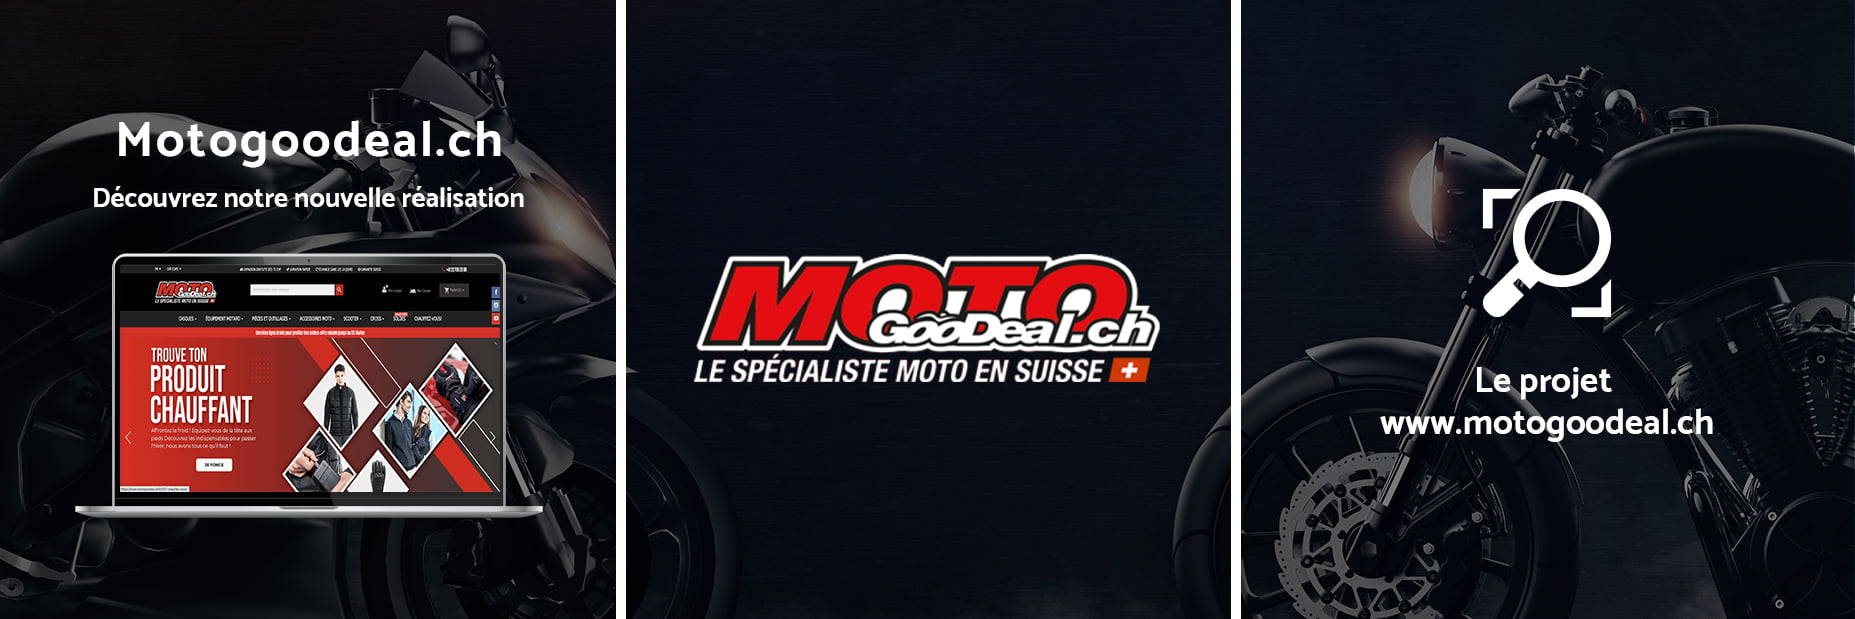 motogoodeal.ch - Réalisation PrestaShop by S2A Solution - Agence de communication à Genève